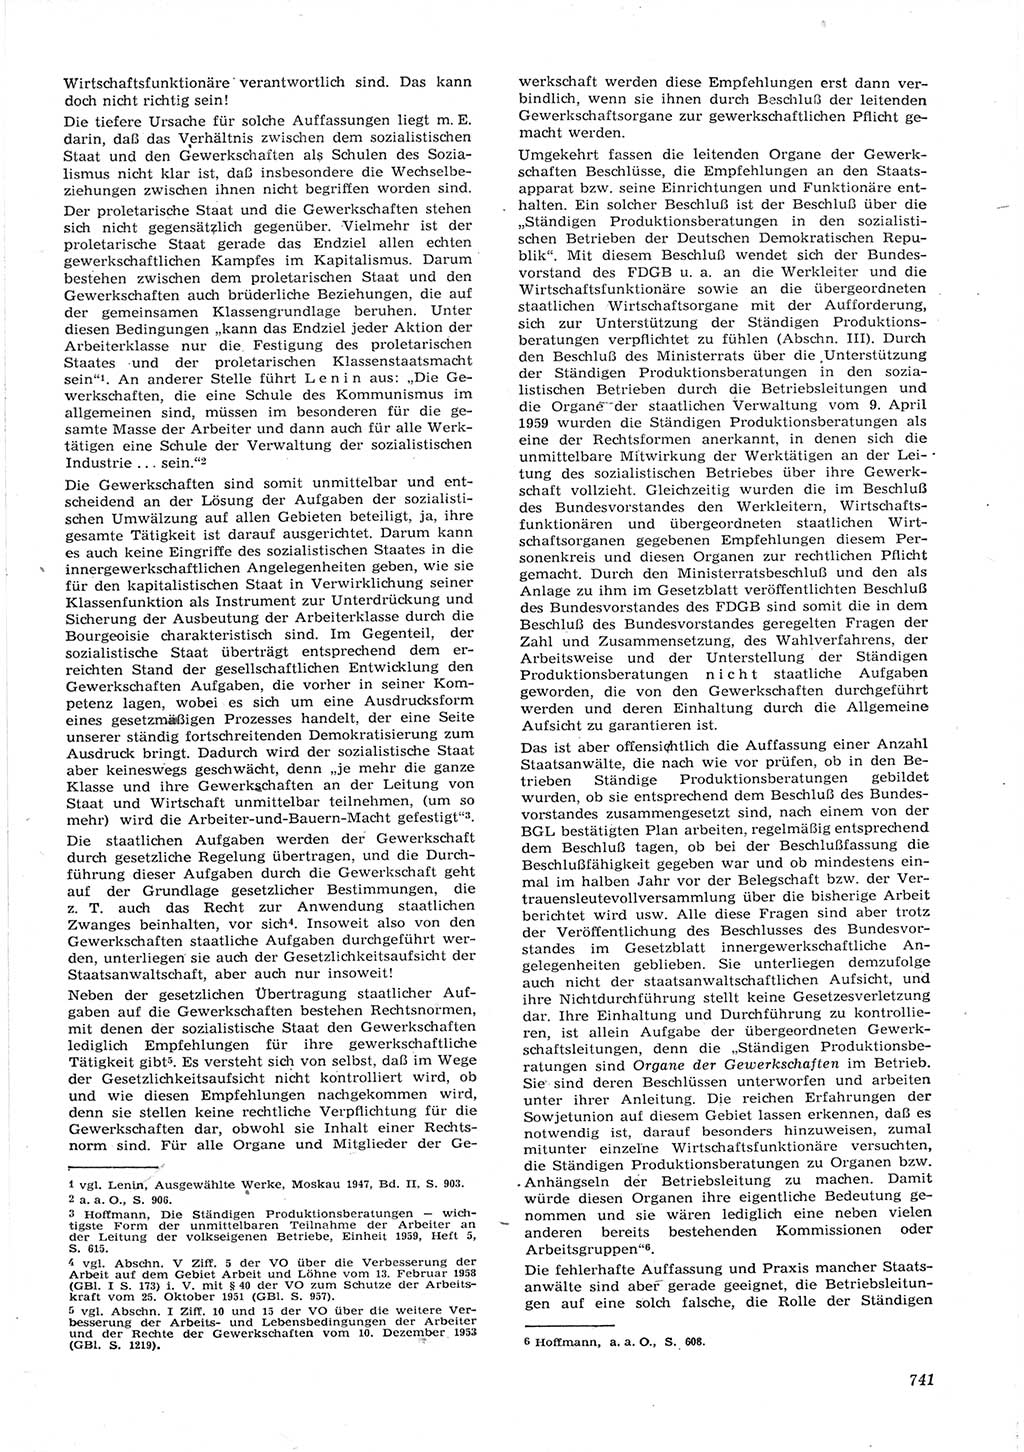 Neue Justiz (NJ), Zeitschrift für Recht und Rechtswissenschaft [Deutsche Demokratische Republik (DDR)], 15. Jahrgang 1961, Seite 741 (NJ DDR 1961, S. 741)